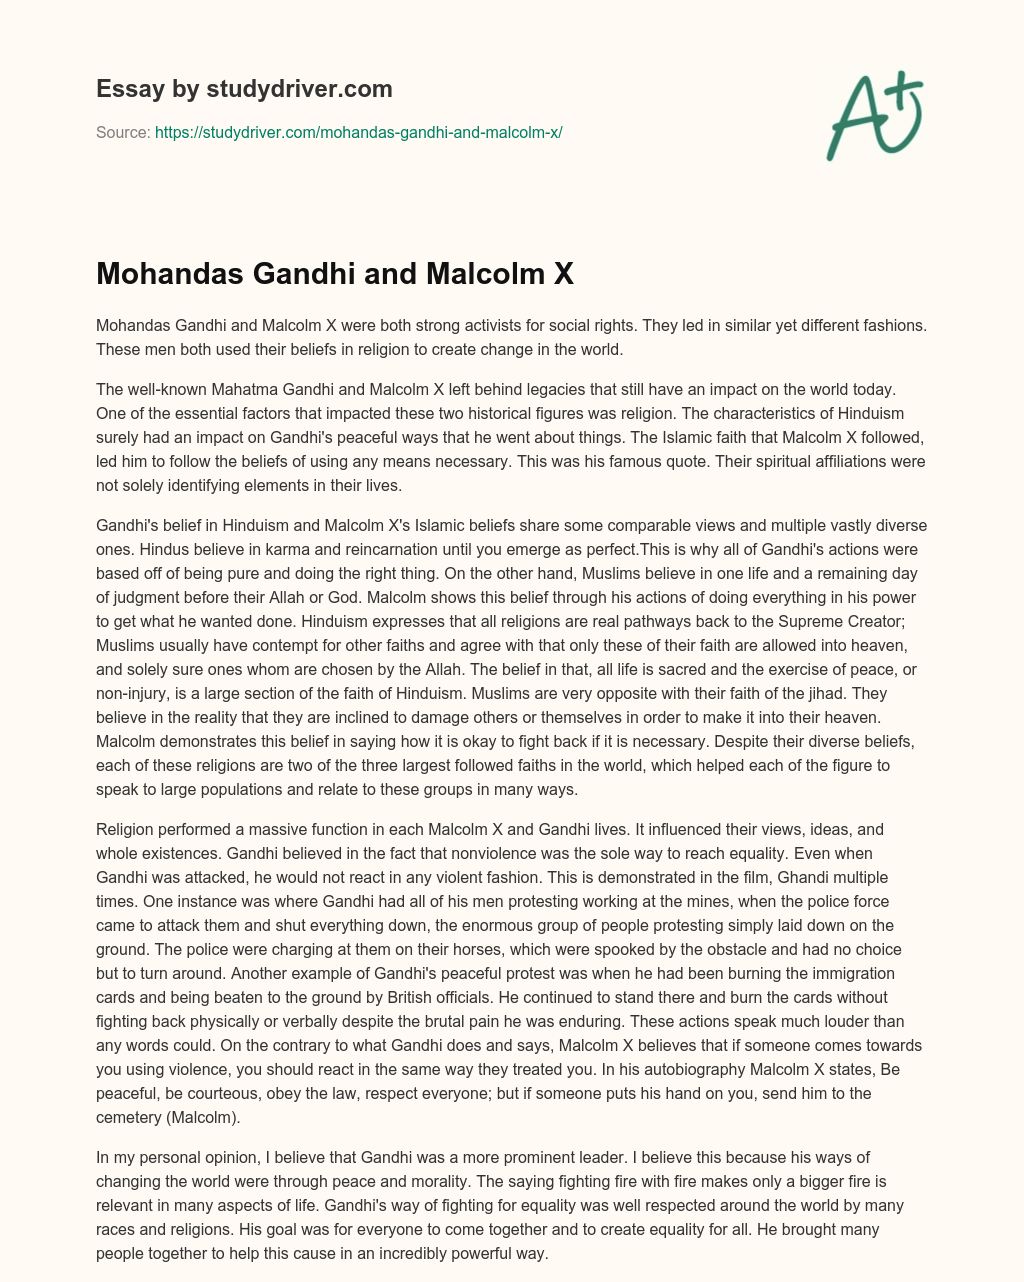 Mohandas Gandhi and Malcolm X essay